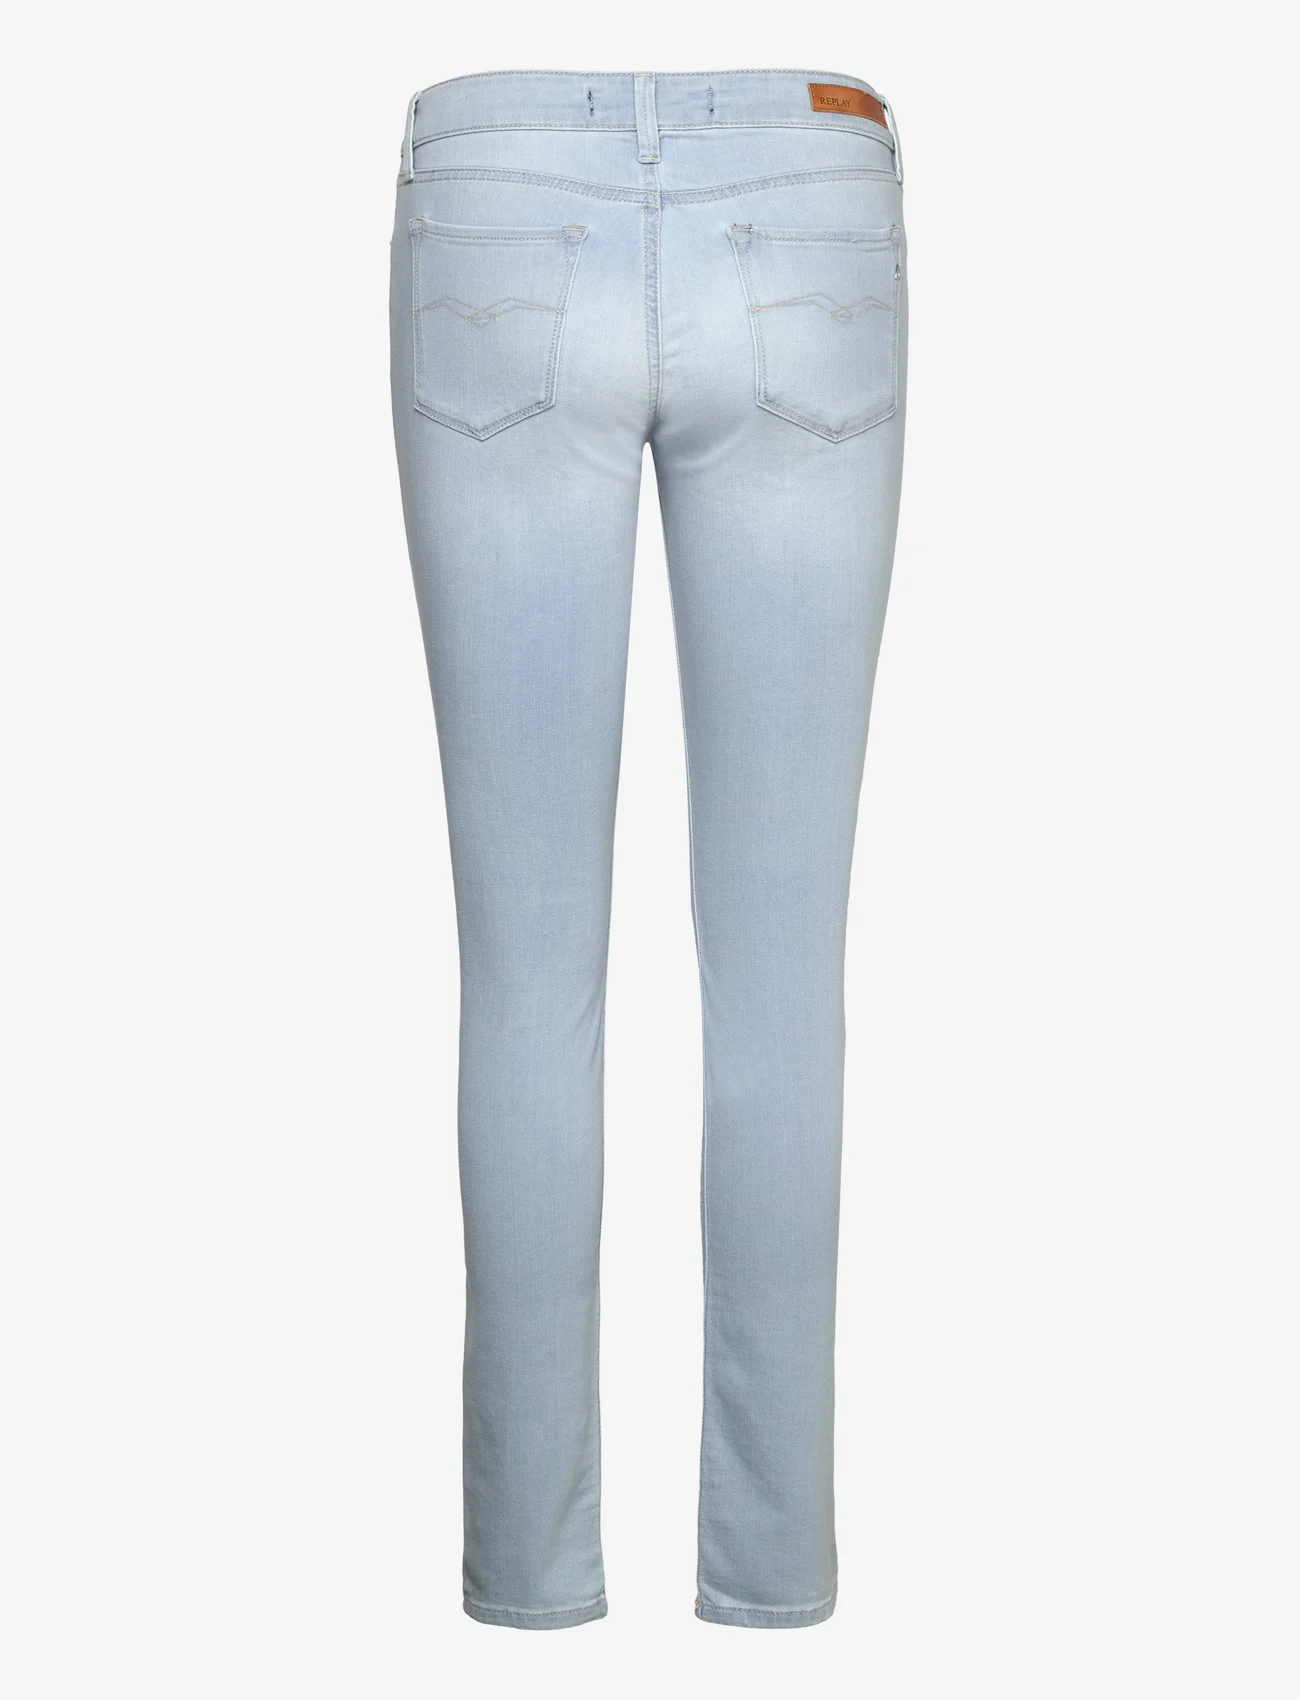 Replay - NEW LUZ Trousers SKINNY 99 Denim - dżinsy skinny fit - blue - 1